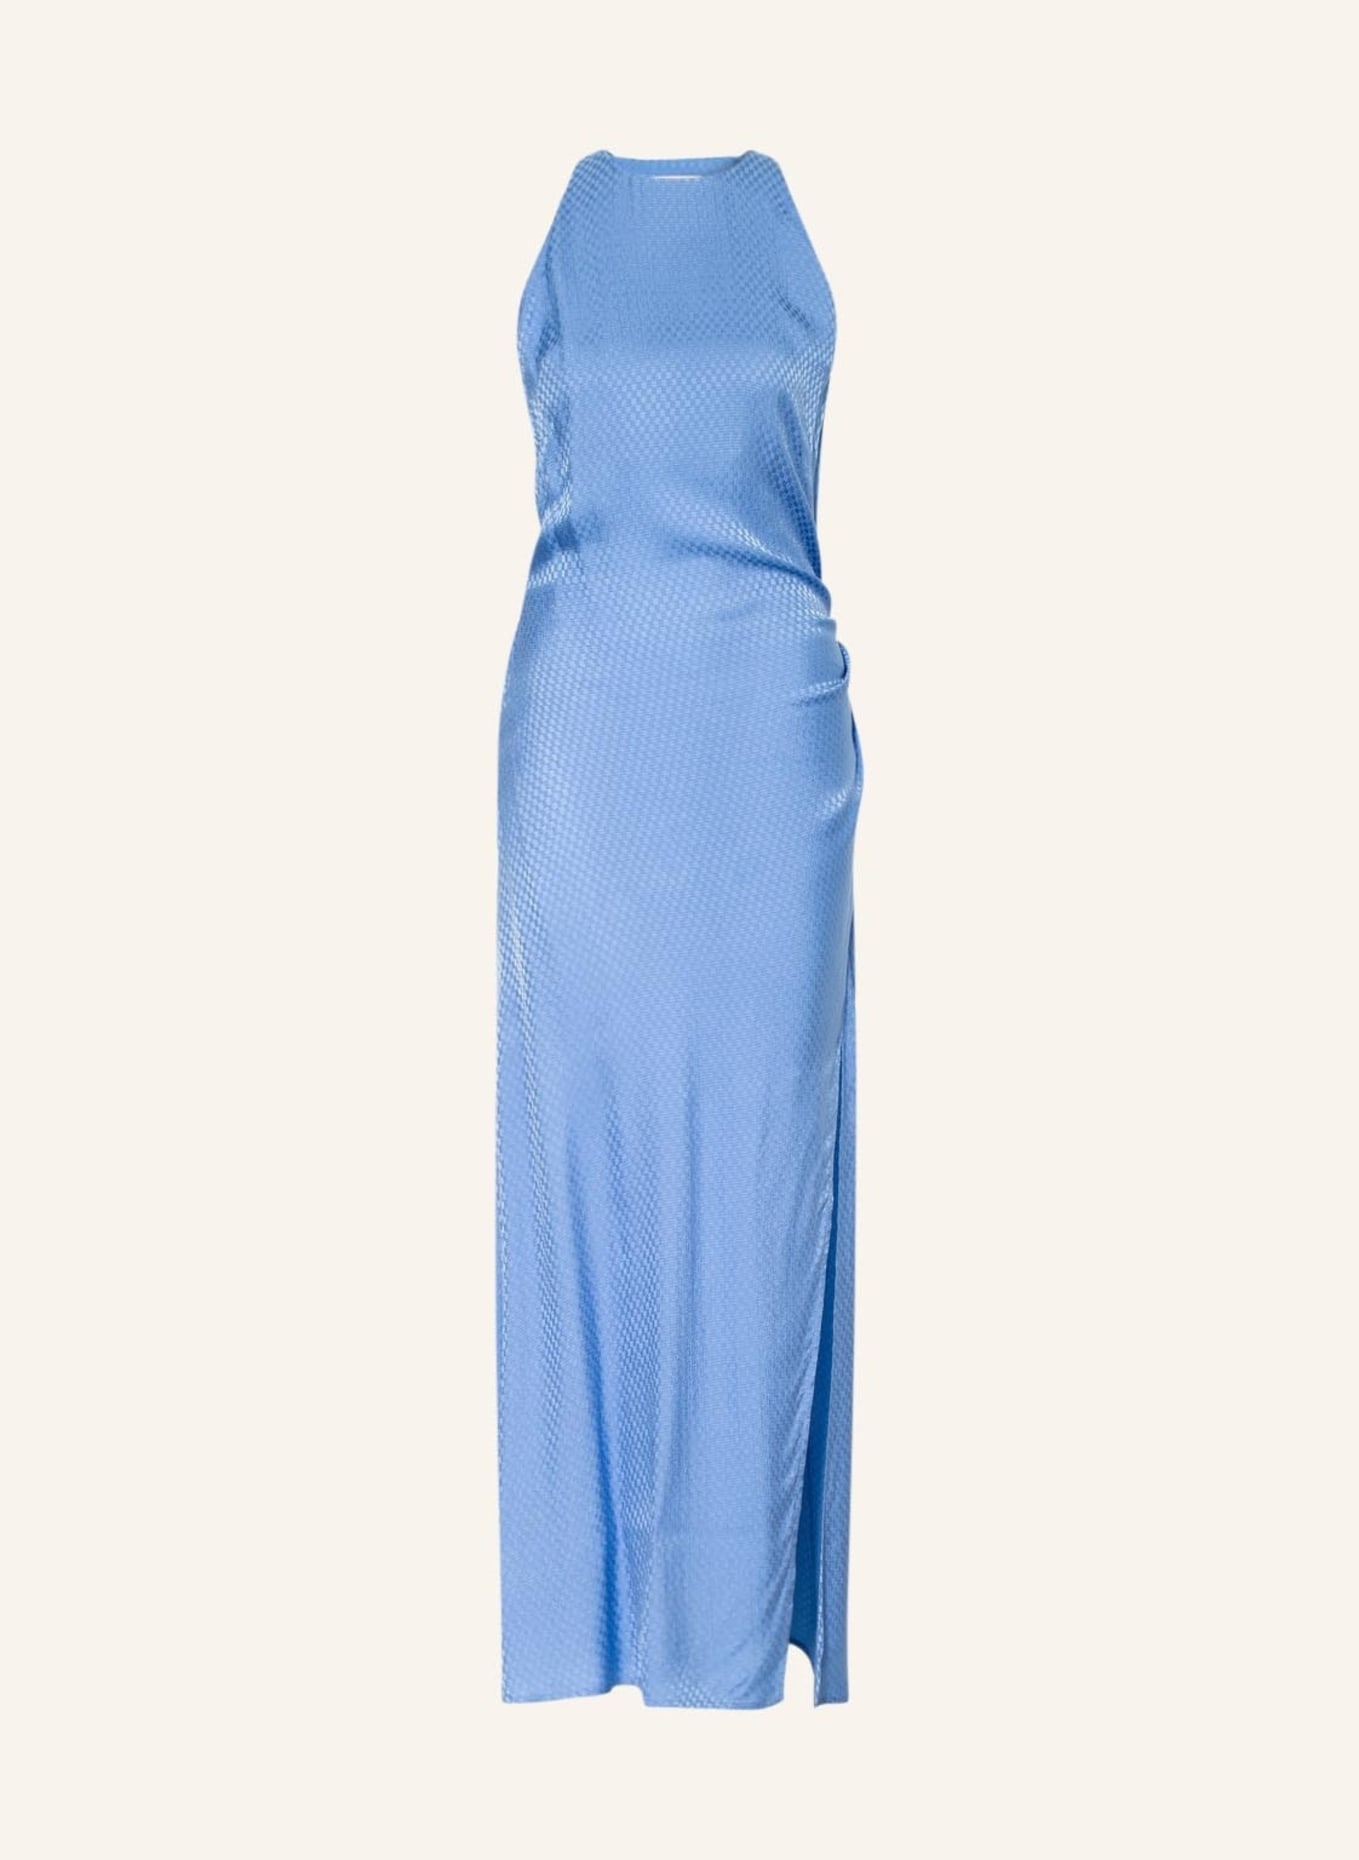 BAUM UND PFERDGARTEN Kleid ATLAS, Farbe: BLAU (Bild 1)